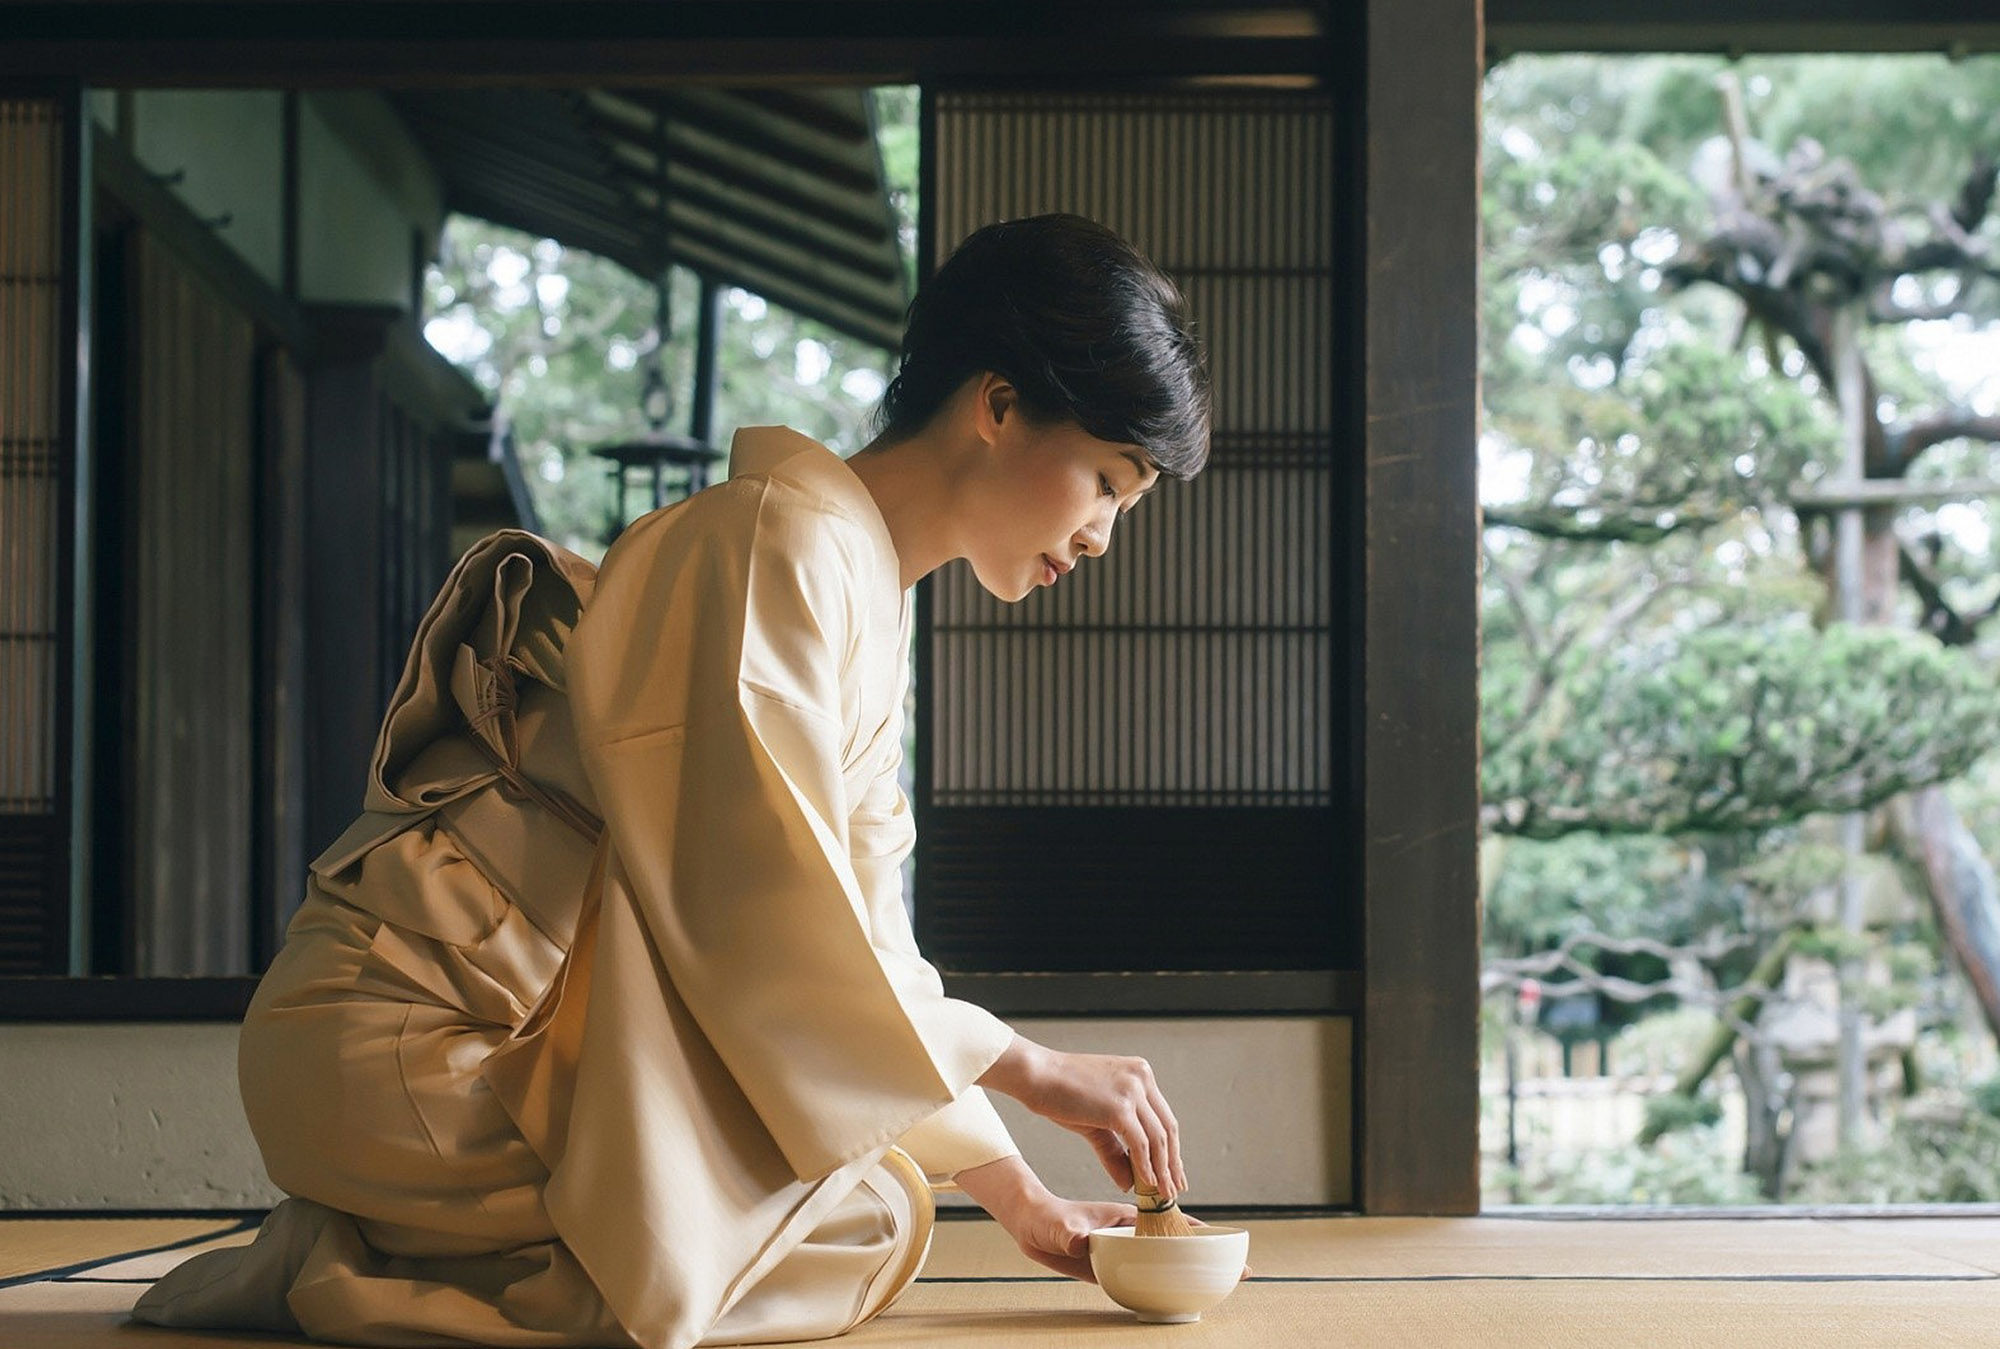 Japonların Geleneksel Çay Seremonisi “Chado” – Zaman Makinesinde Yolculuk (1. Bölüm)